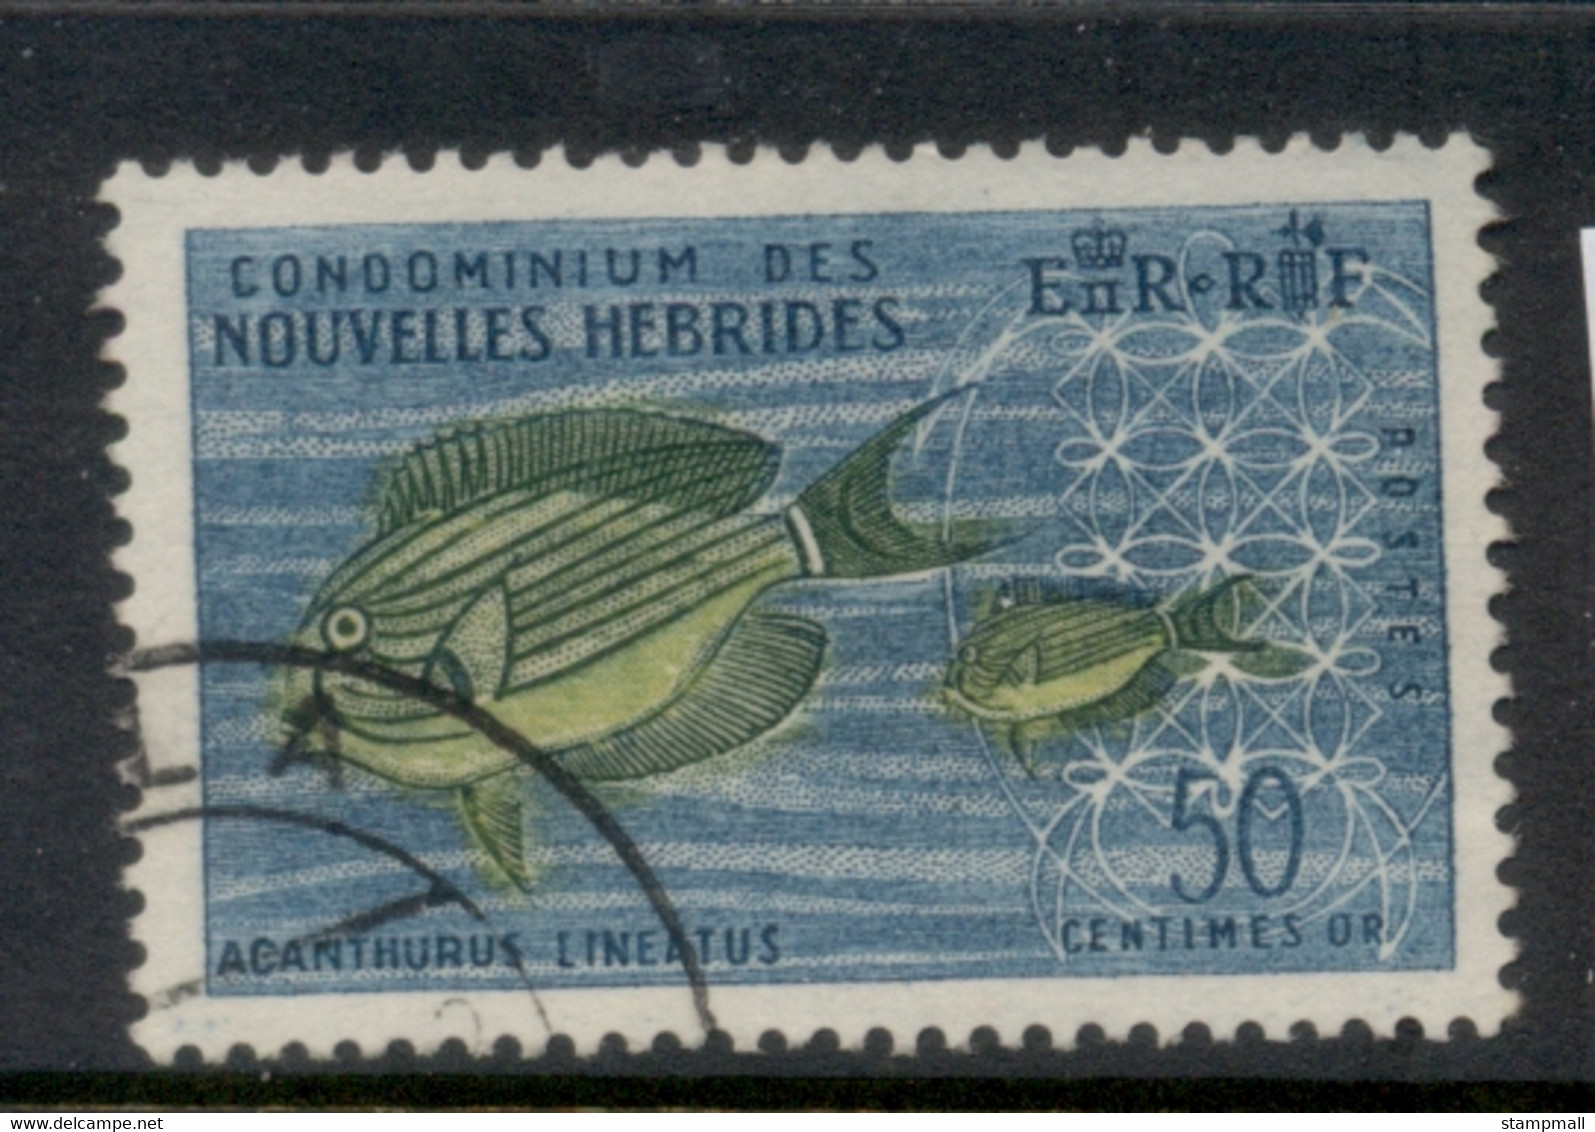 New Hebrides (Fr) 1963-67 Pictorials 50c FU - Gebruikt